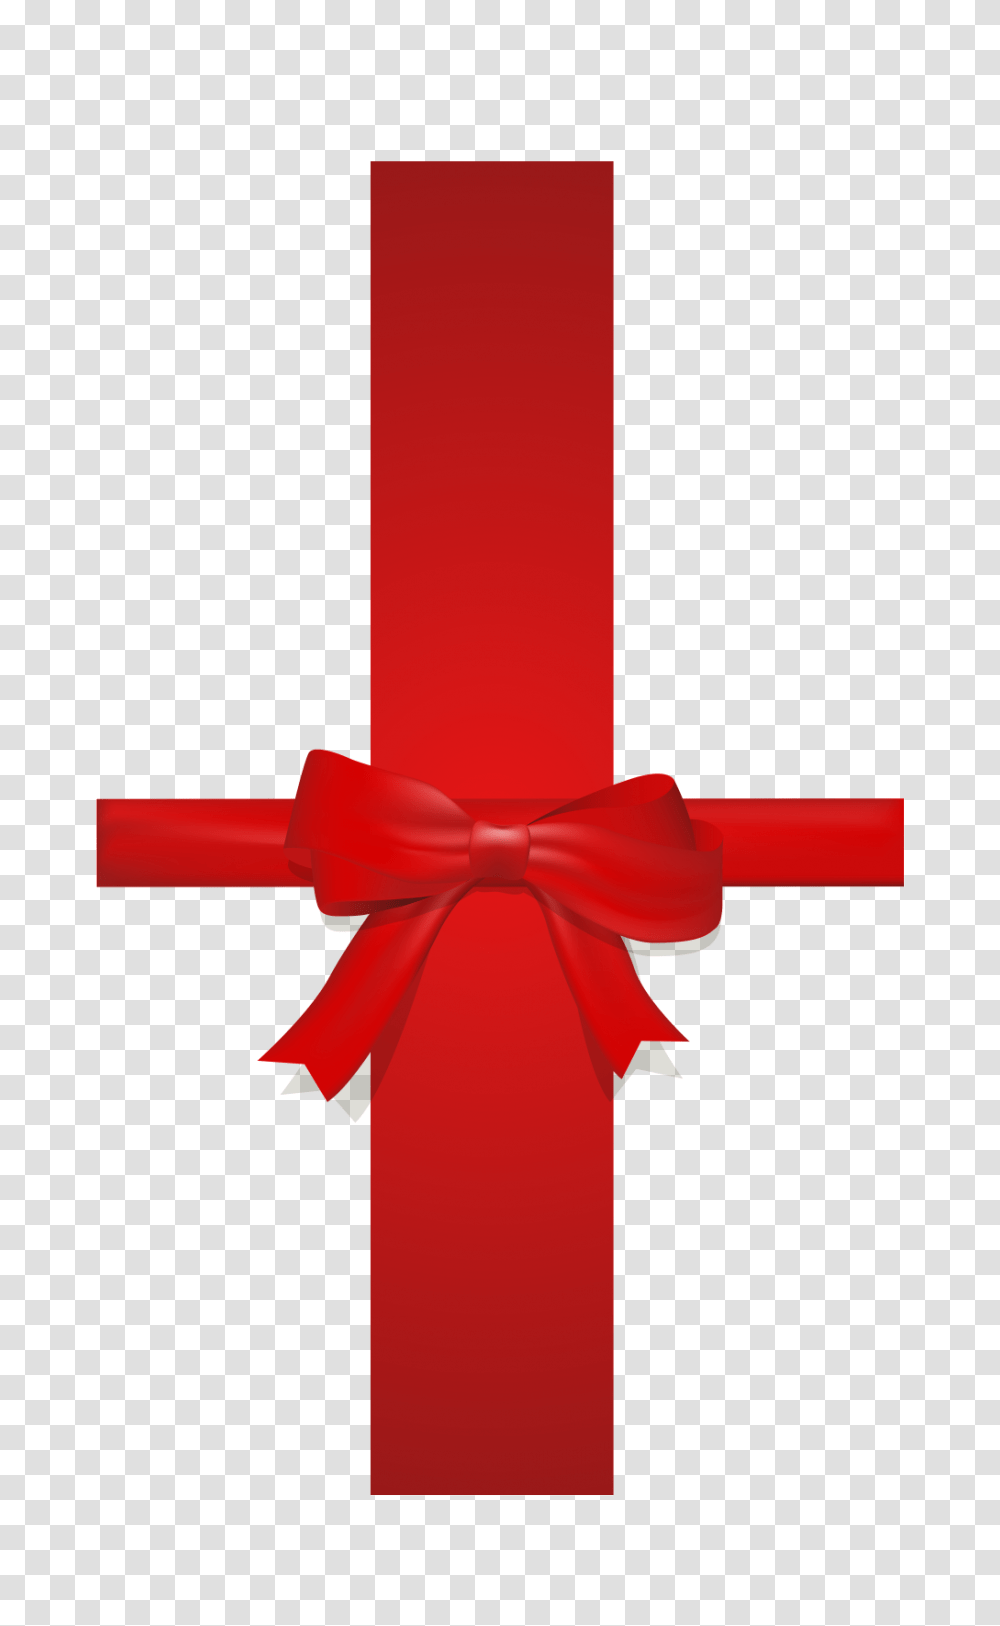 Corbata De Lazo Rojo Pintado A Mano Descargar Gratis, Cross, First Aid, Logo Transparent Png